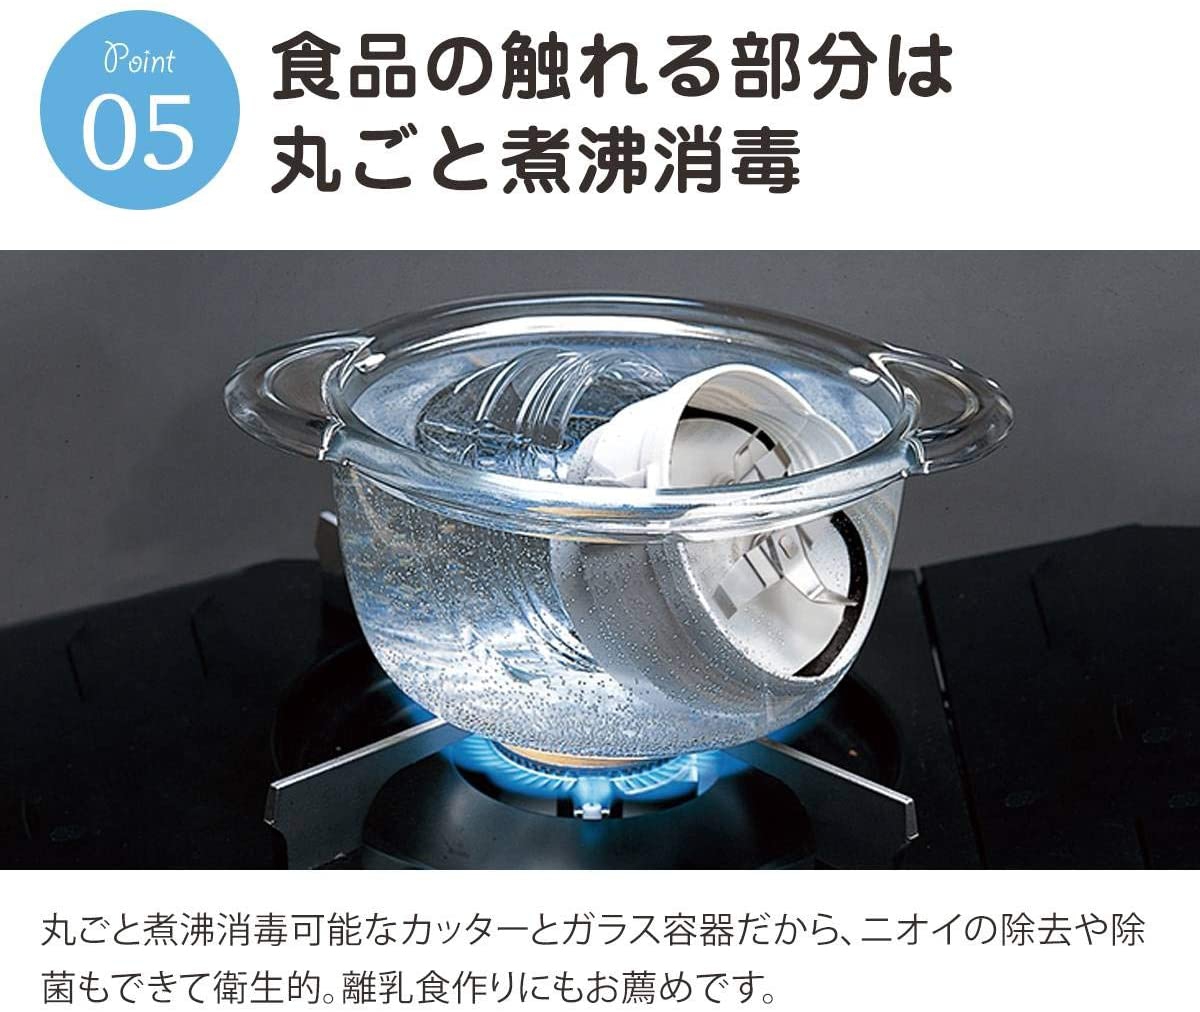 岩谷産業(Iwatani) クラッシュミルサー ブラック IFM-C20Gの商品画像7 